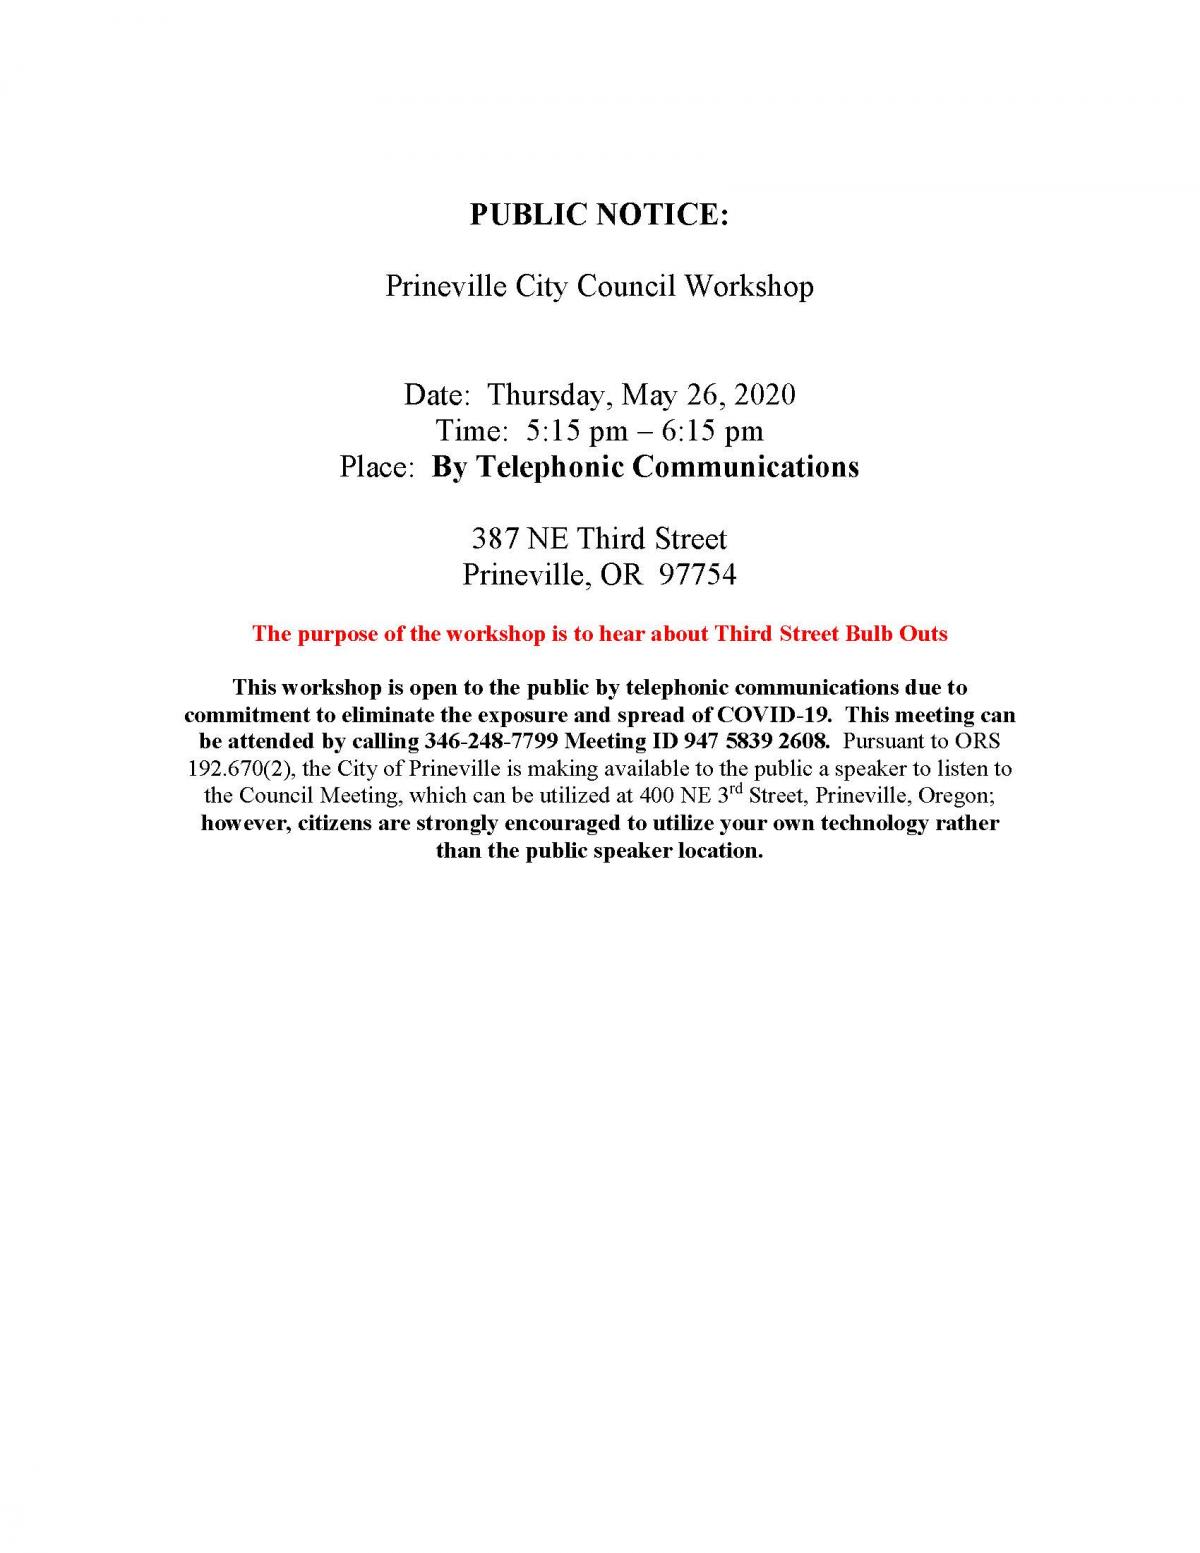 Public Notice - Council Workshop 5-26-2020